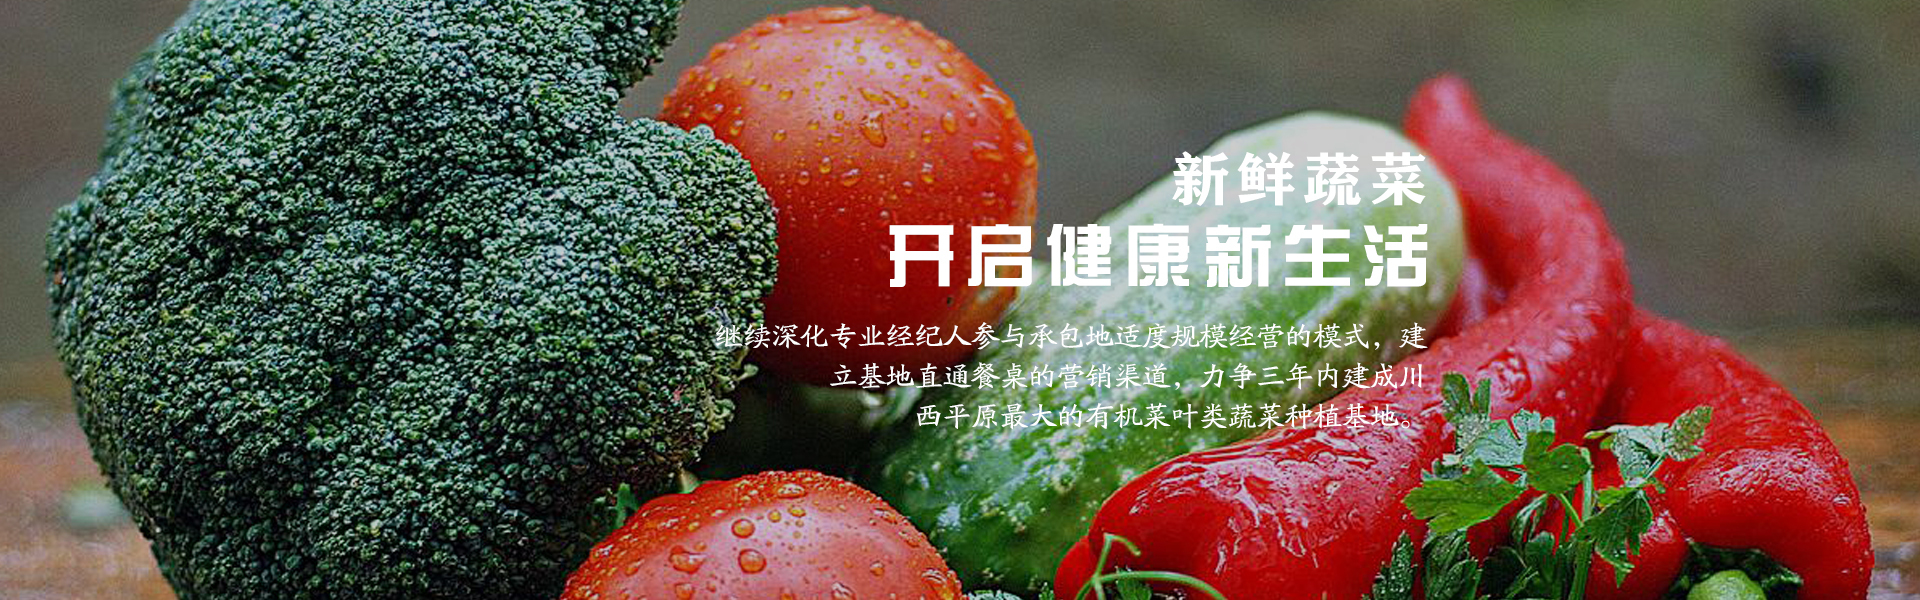 有机蔬菜招商平台_脱水蔬菜相关-成都市录超农业有限责任公司